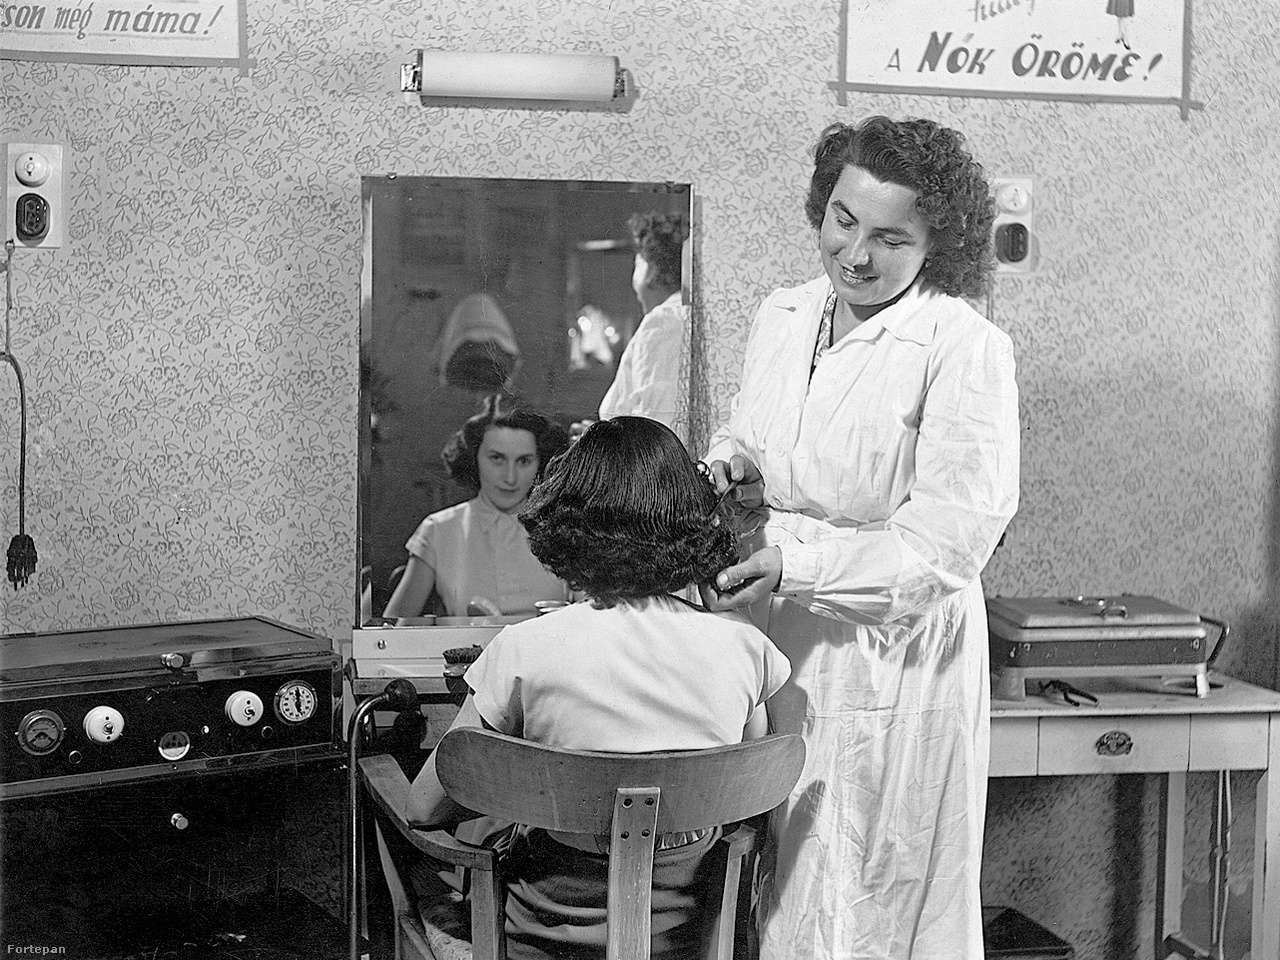 1963-as fodrászat: a nők öröme a jó frizua